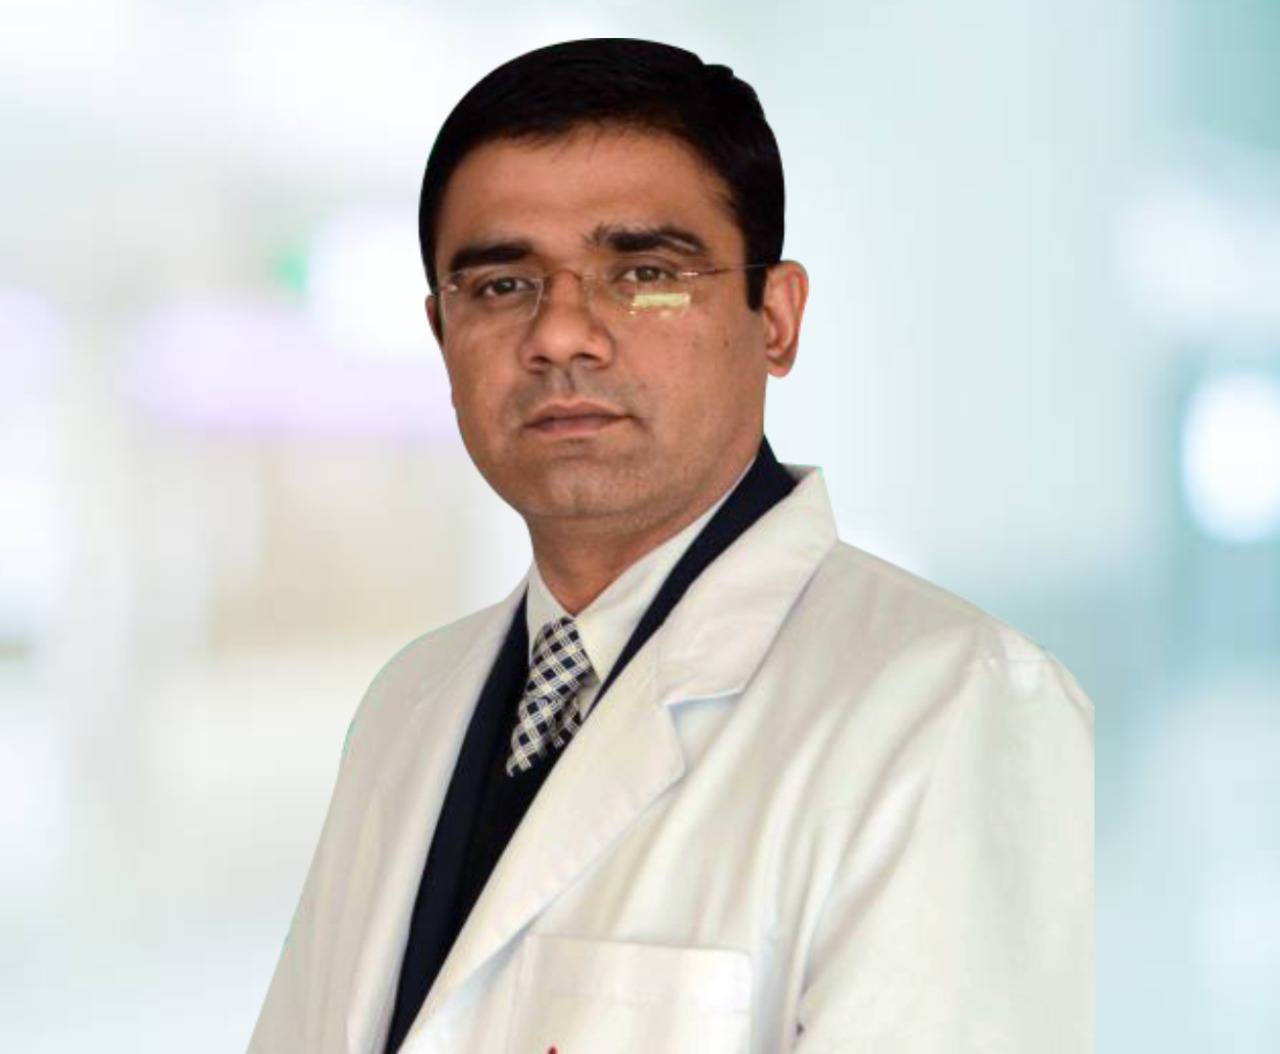 Dr. Rahul Kohli